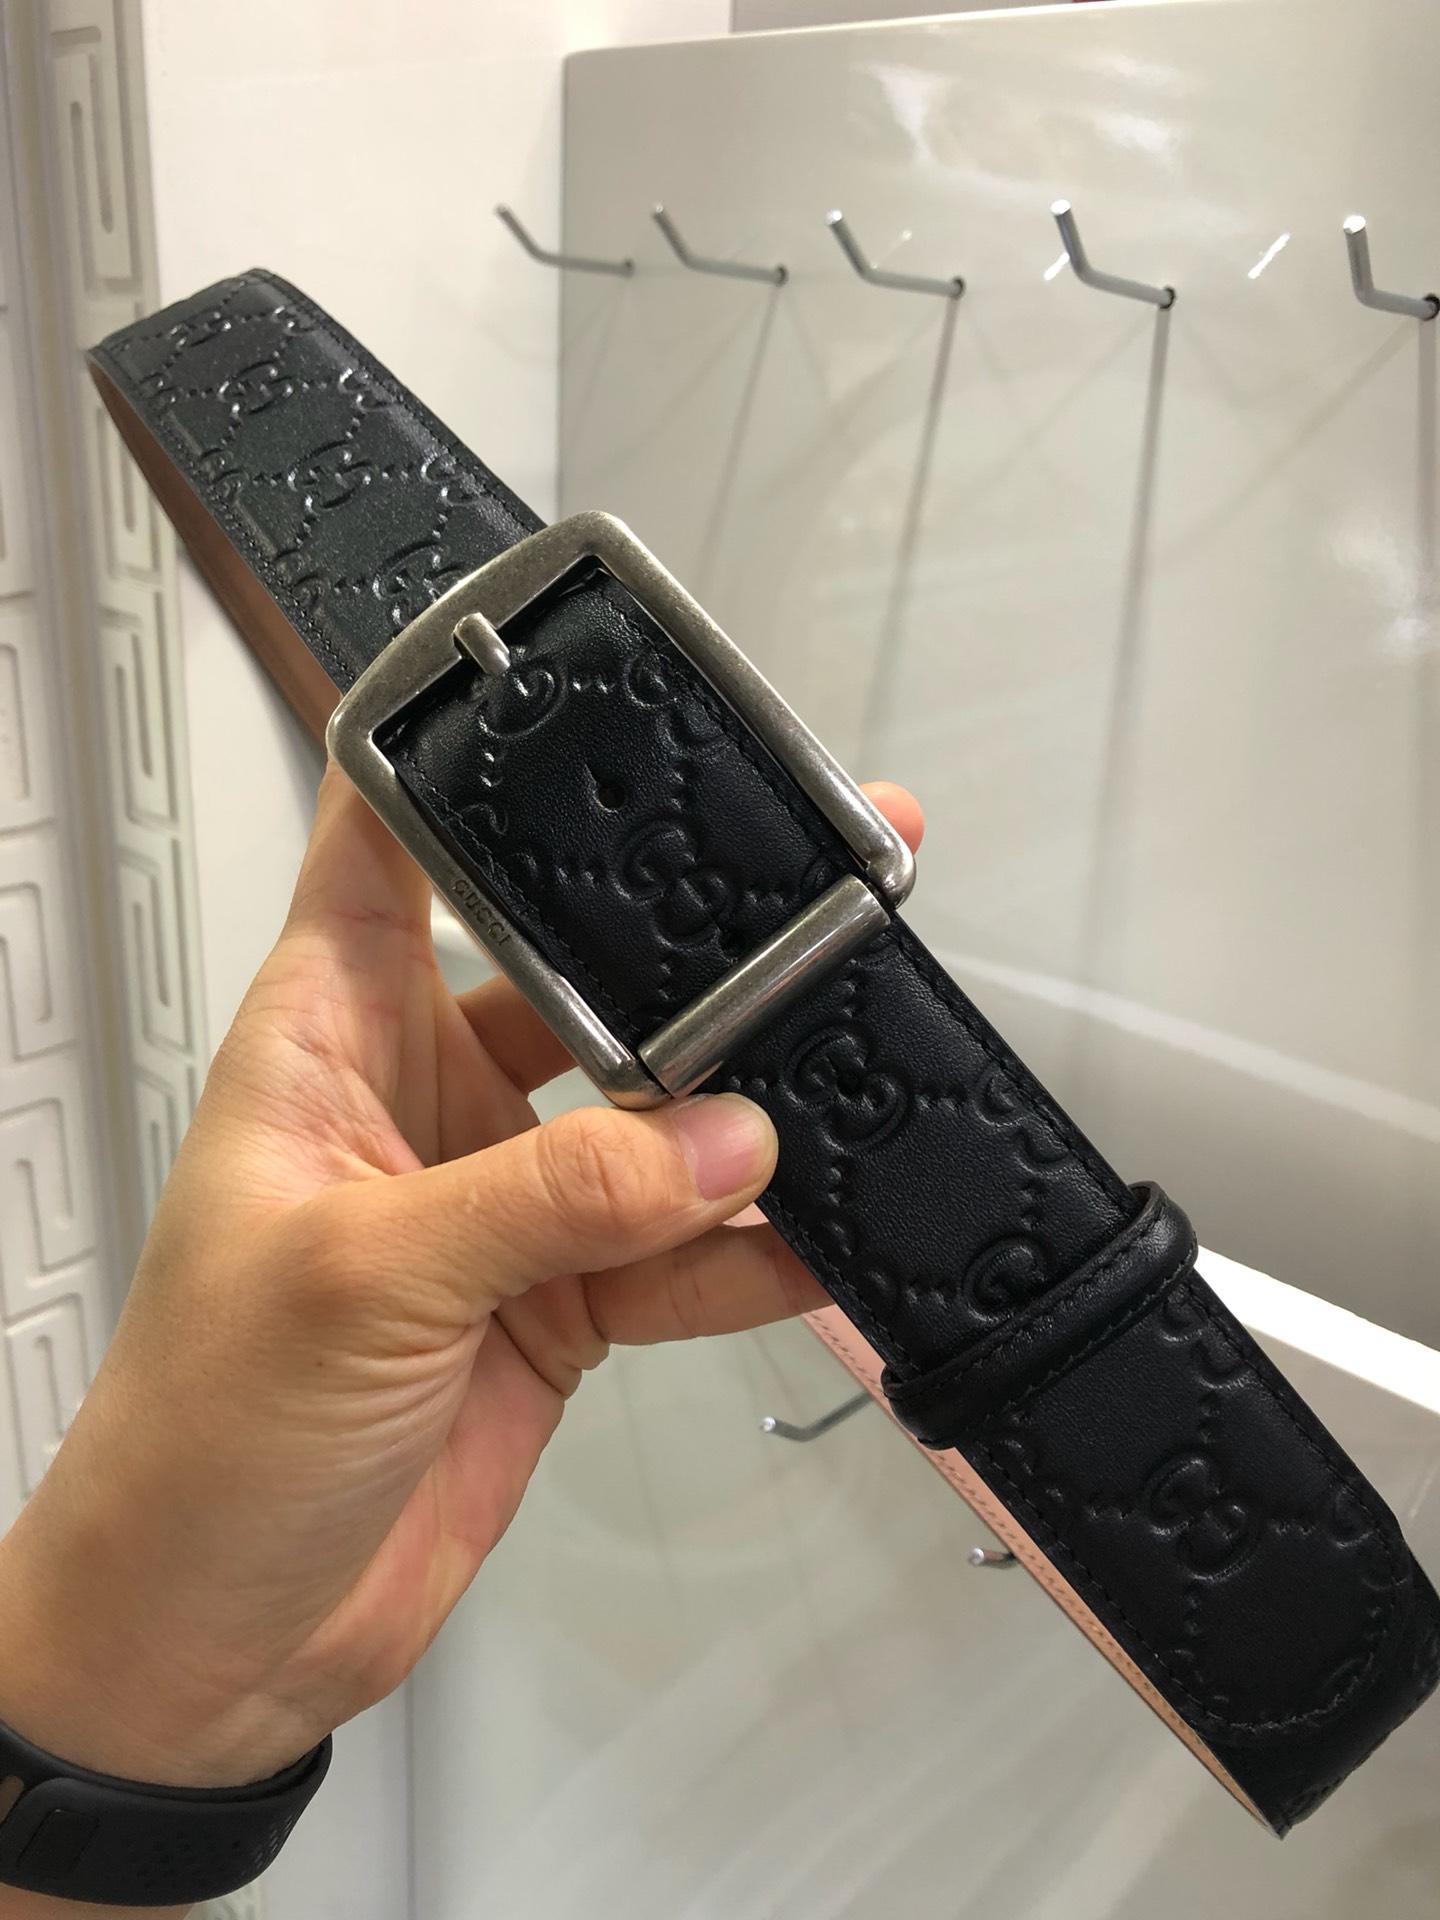 Silver G-less Gucci belt ASS02431